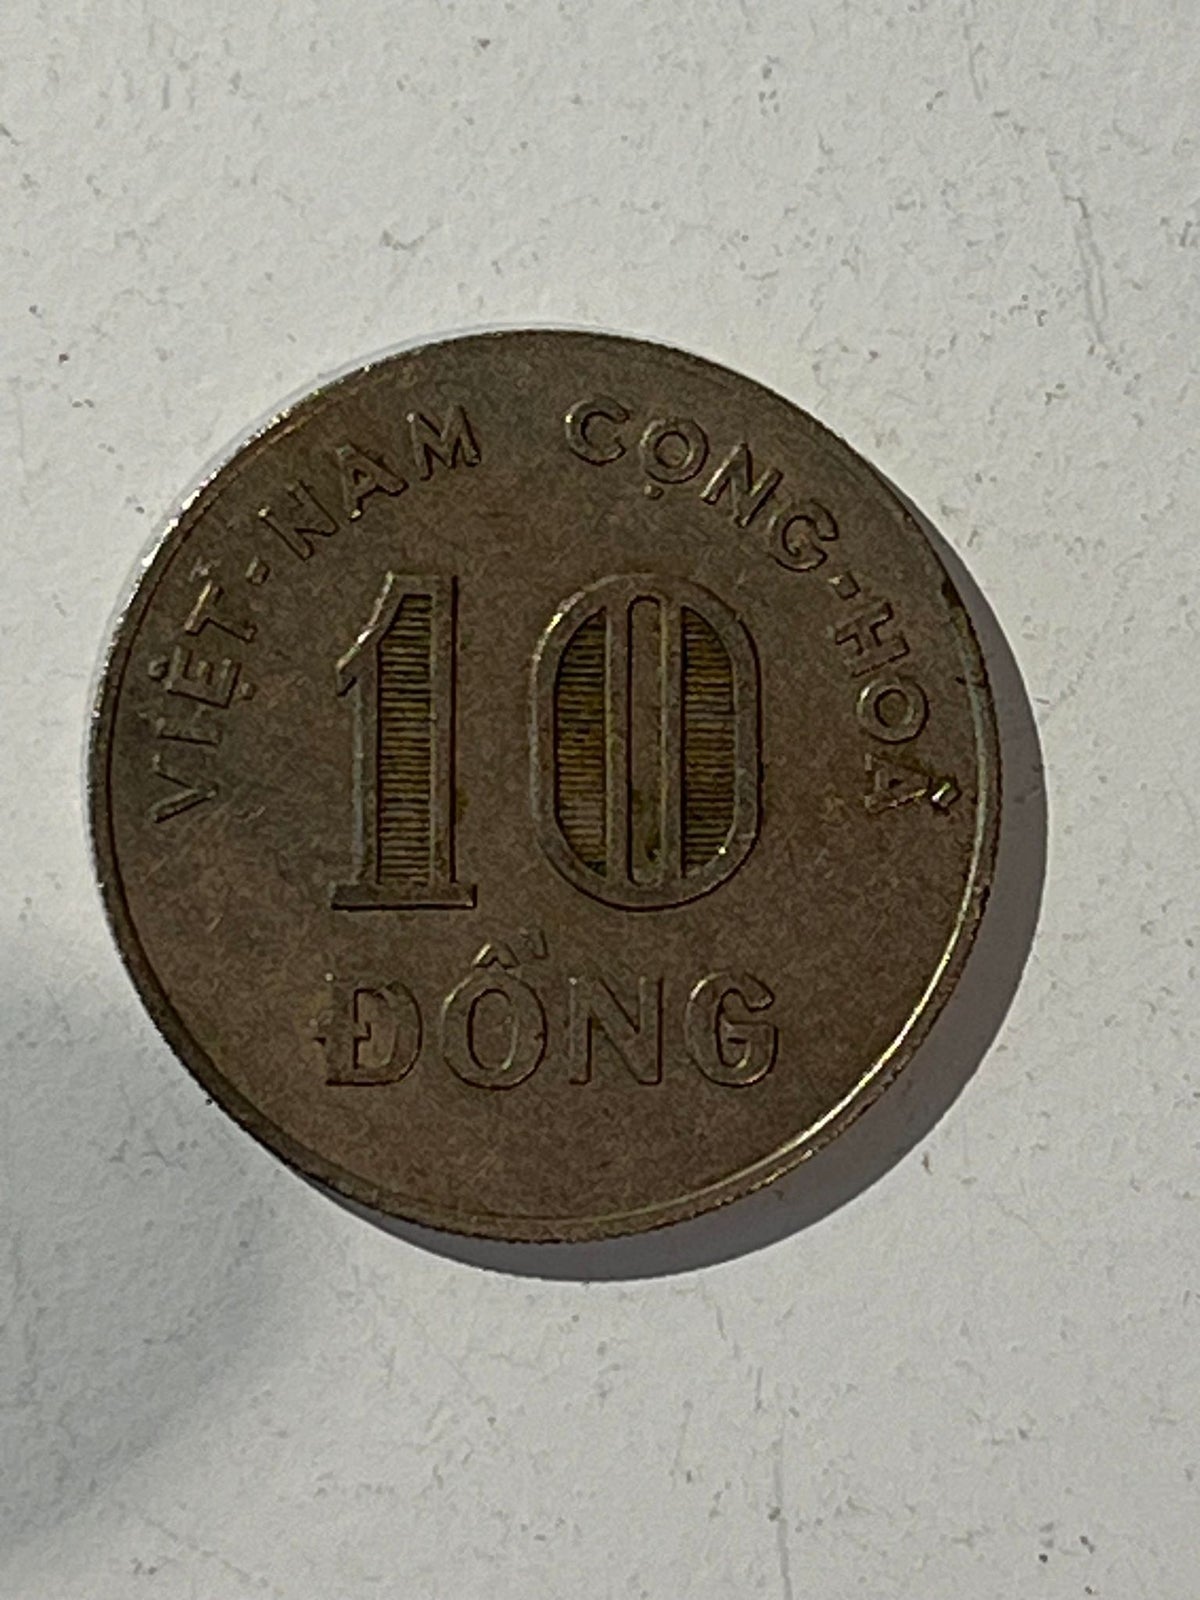 Andet land, mønter, 10 Dong